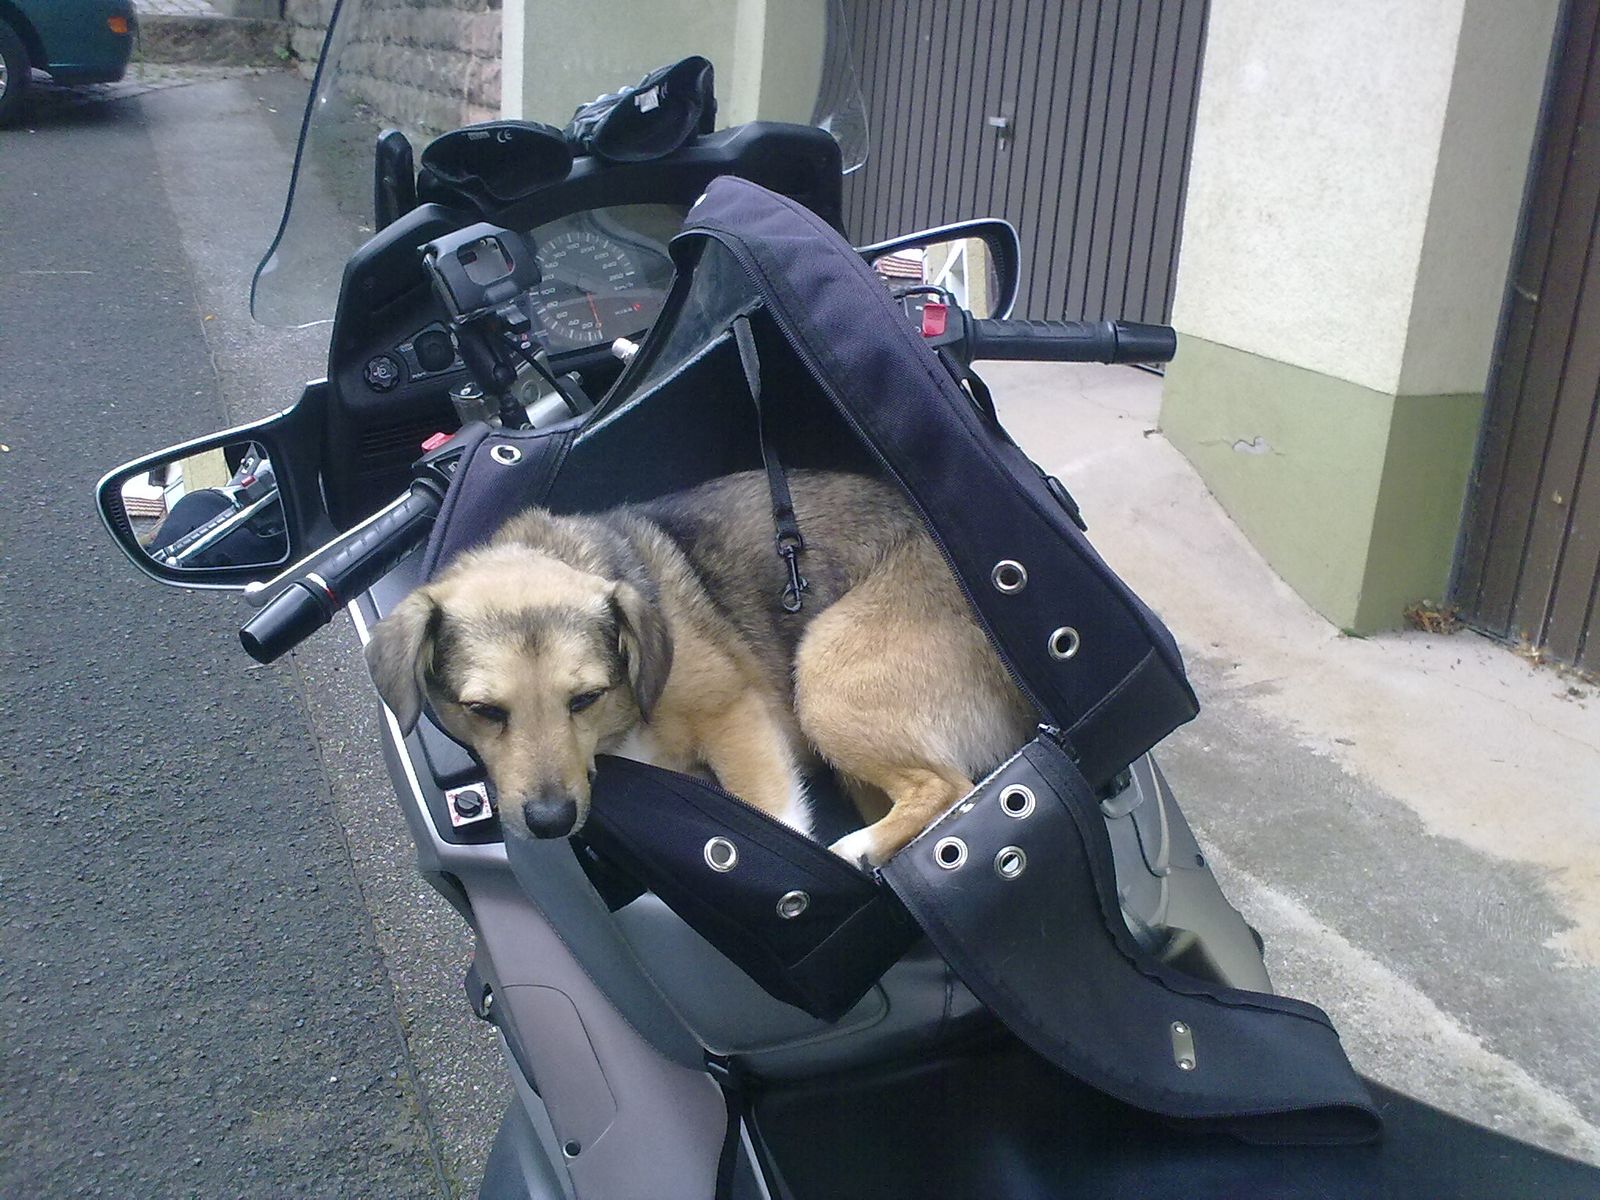 Ein junger braun schwarzer Hund liegt in einem Tankrucksack auf dem Tank des Motorrads dass auf der Strasse steht